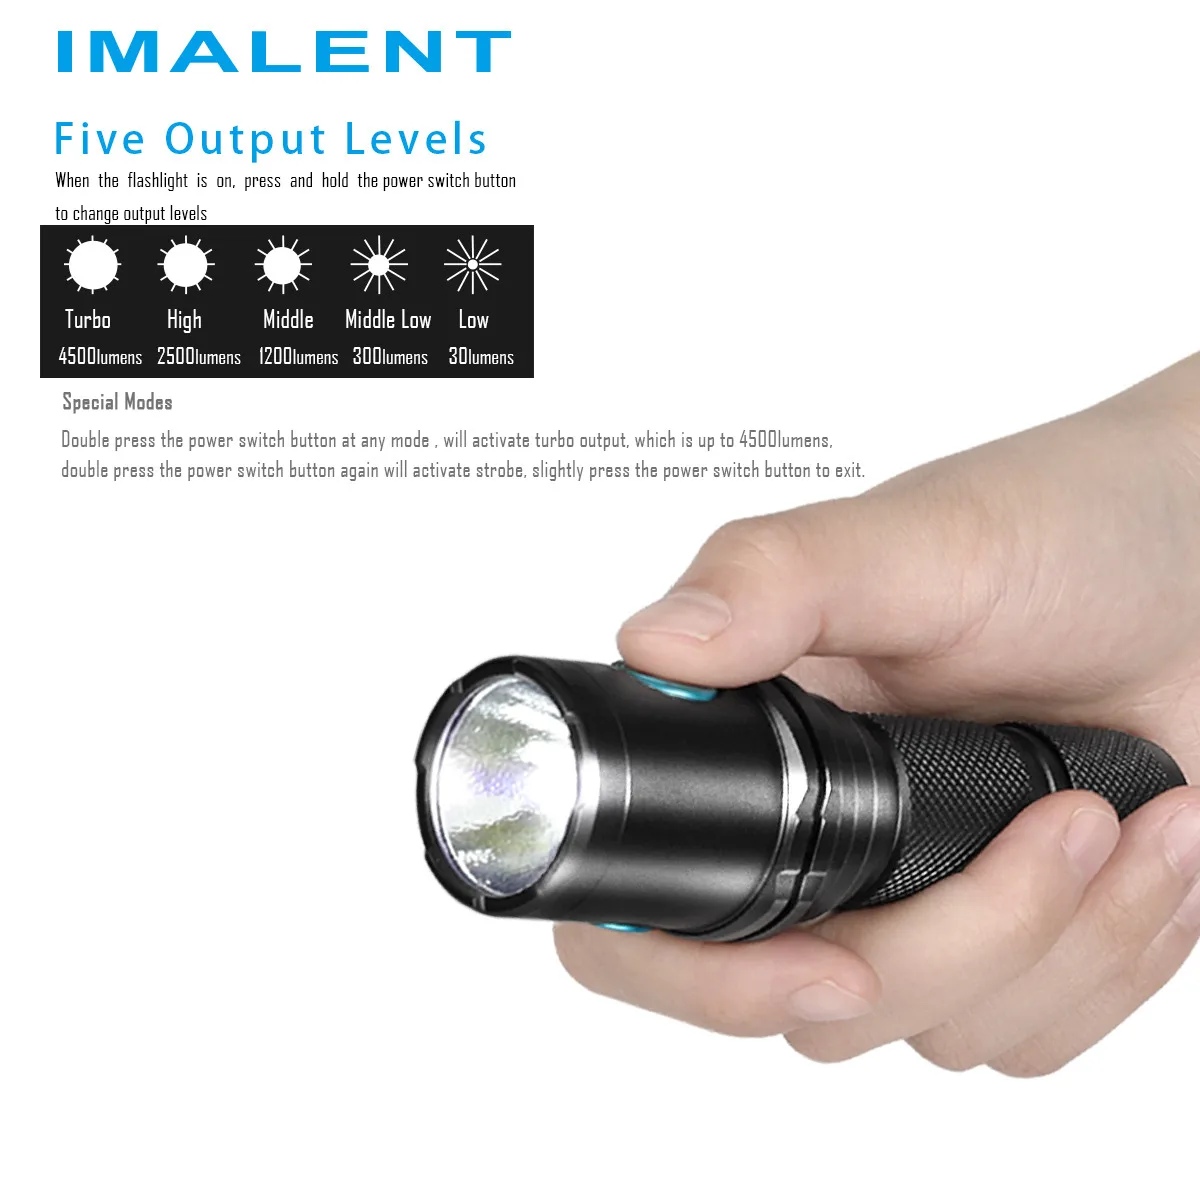 2019 Imalent DM70 светодиодный фонарик CREE XHP70 4500 люмен тактический фонарь с перезаряжаемой батареей 21700 для пеших прогулок, кемпинга